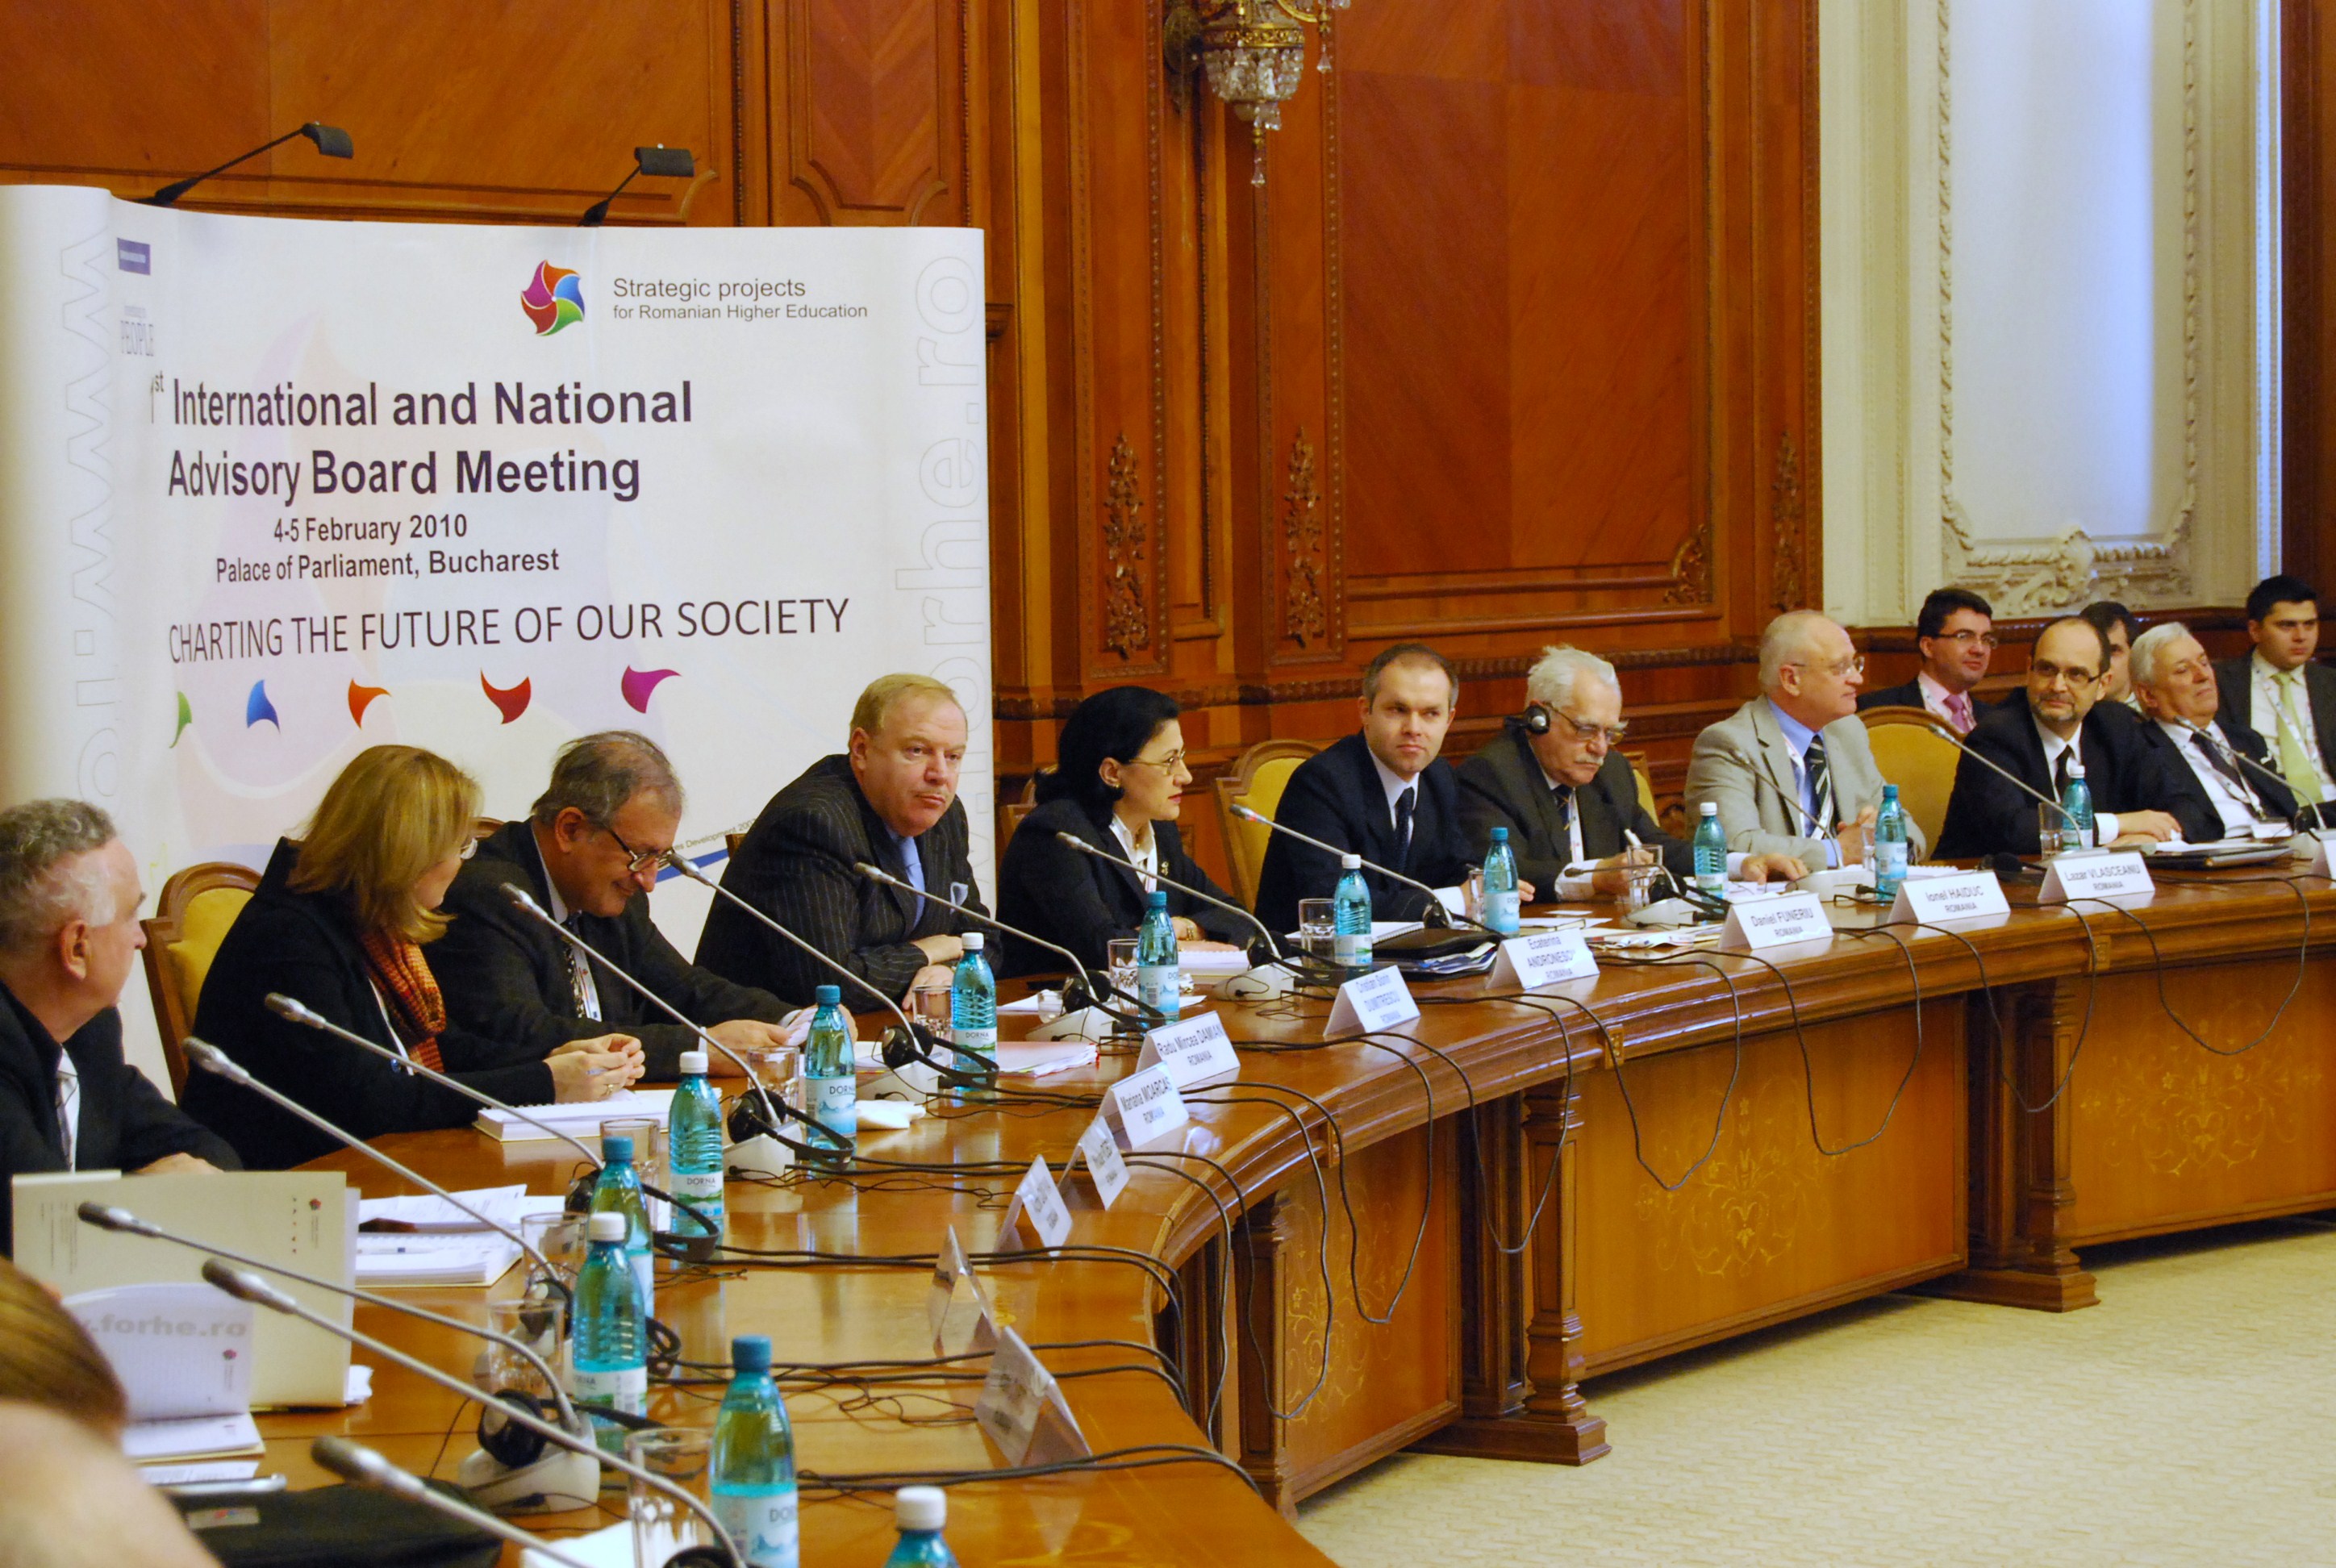 Peste 100 de experti romani si straini au participat la prima reuniune internationala a Comitetului de Avizare a proiectelor strategice pentru reforma sistemului de invatamant superior romanesc